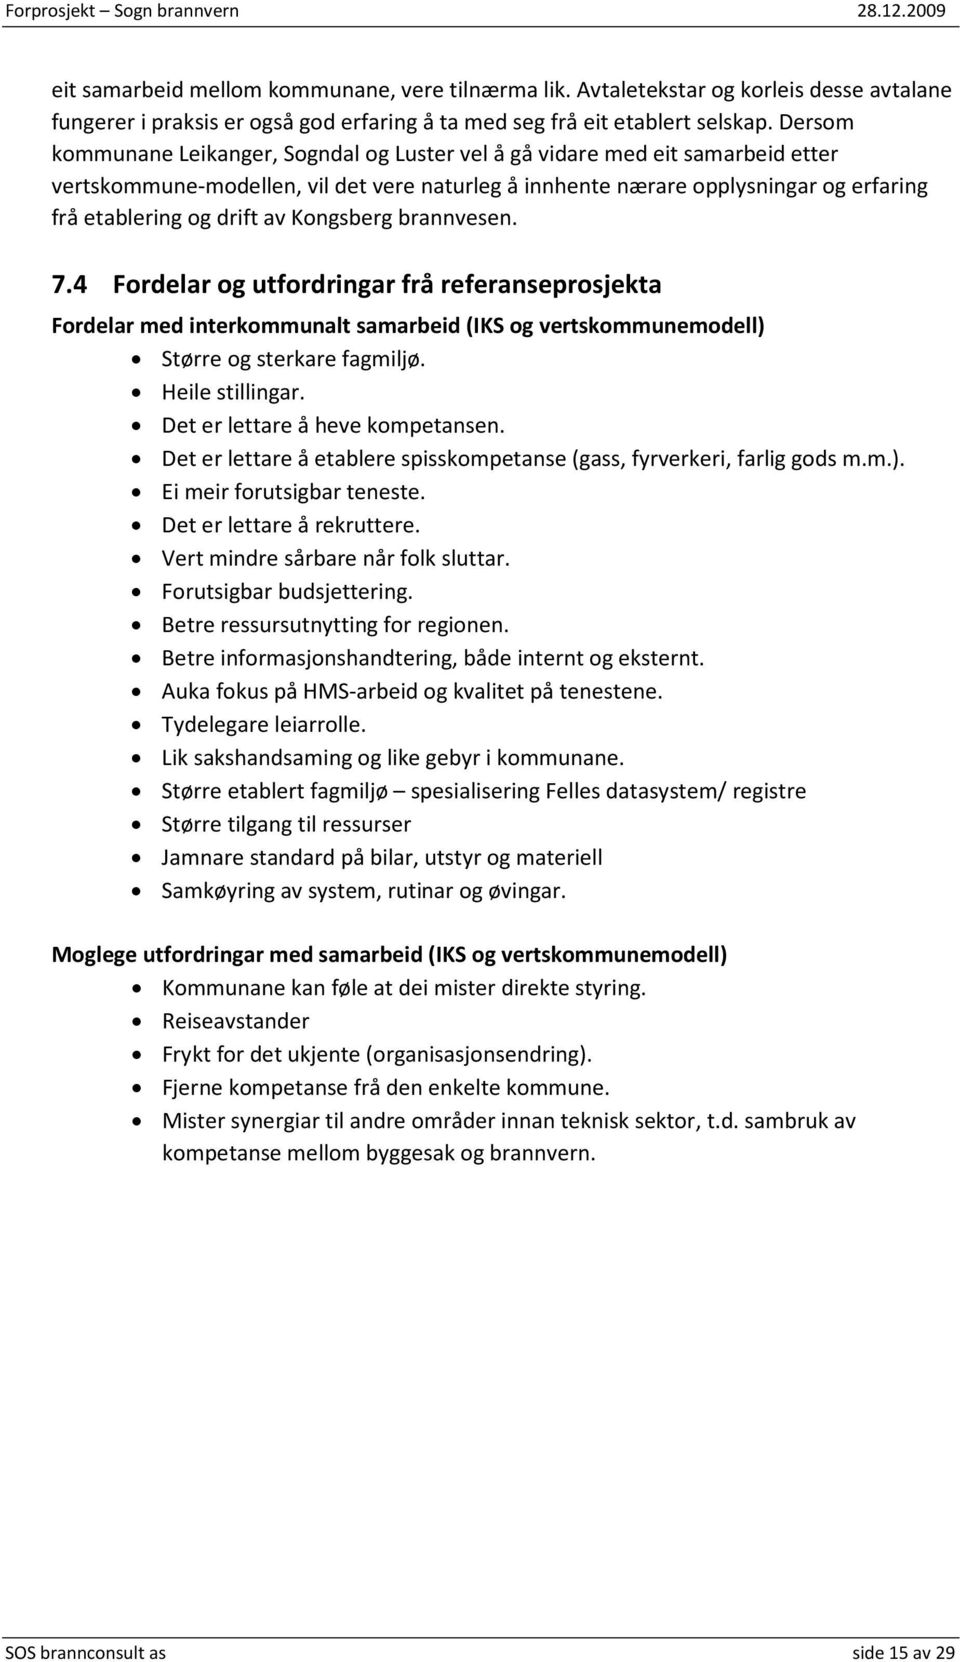 av Kongsberg brannvesen. 7.4 Fordelar og utfordringar frå referanseprosjekta Fordelar med interkommunalt samarbeid (IKS og vertskommunemodell) Større og sterkare fagmiljø. Heile stillingar.